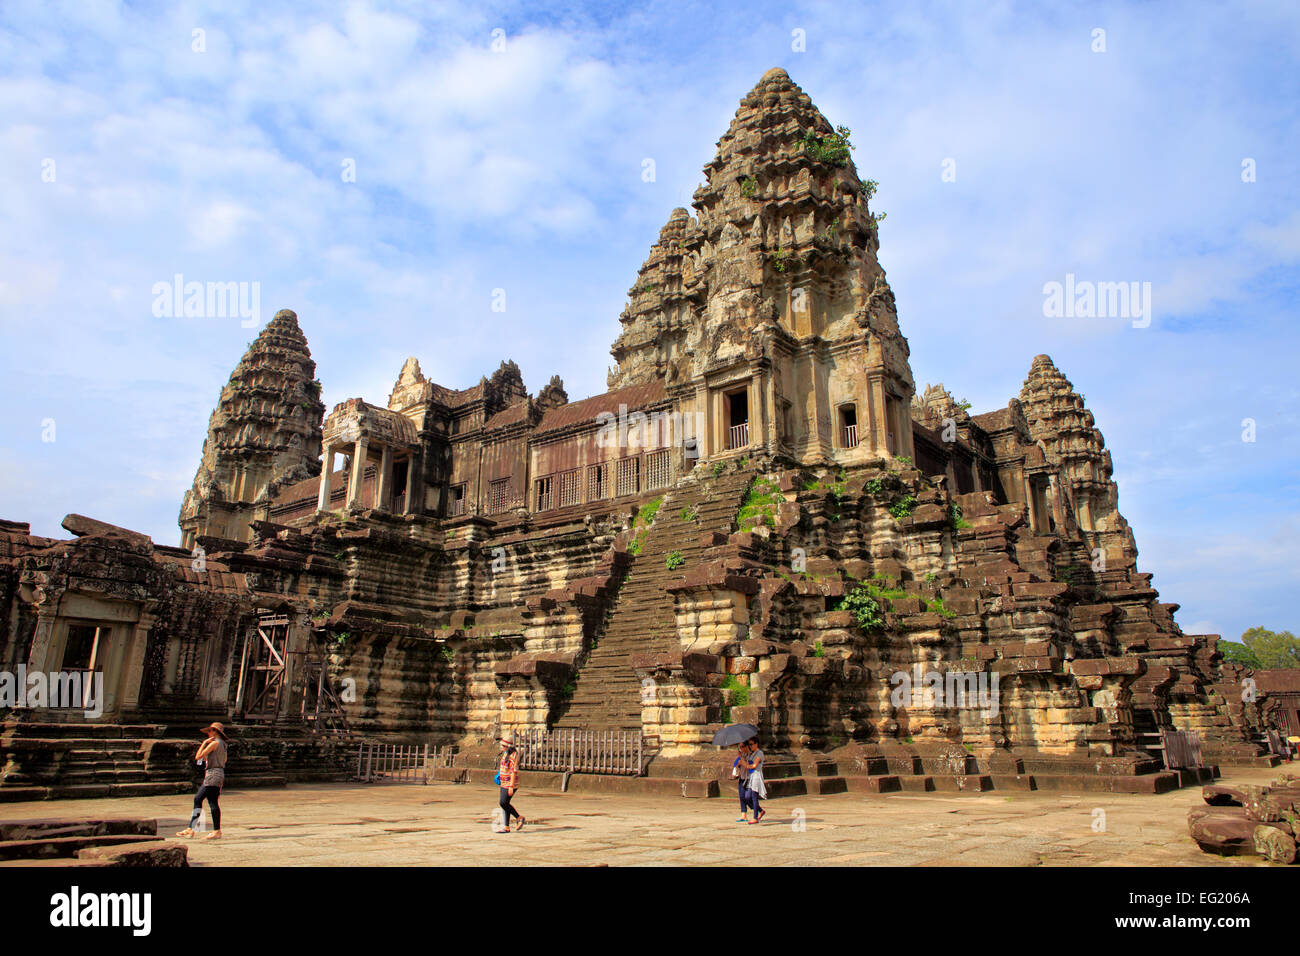 Angkor Wat temple (1150), Angkor, Cambodia Stock Photo